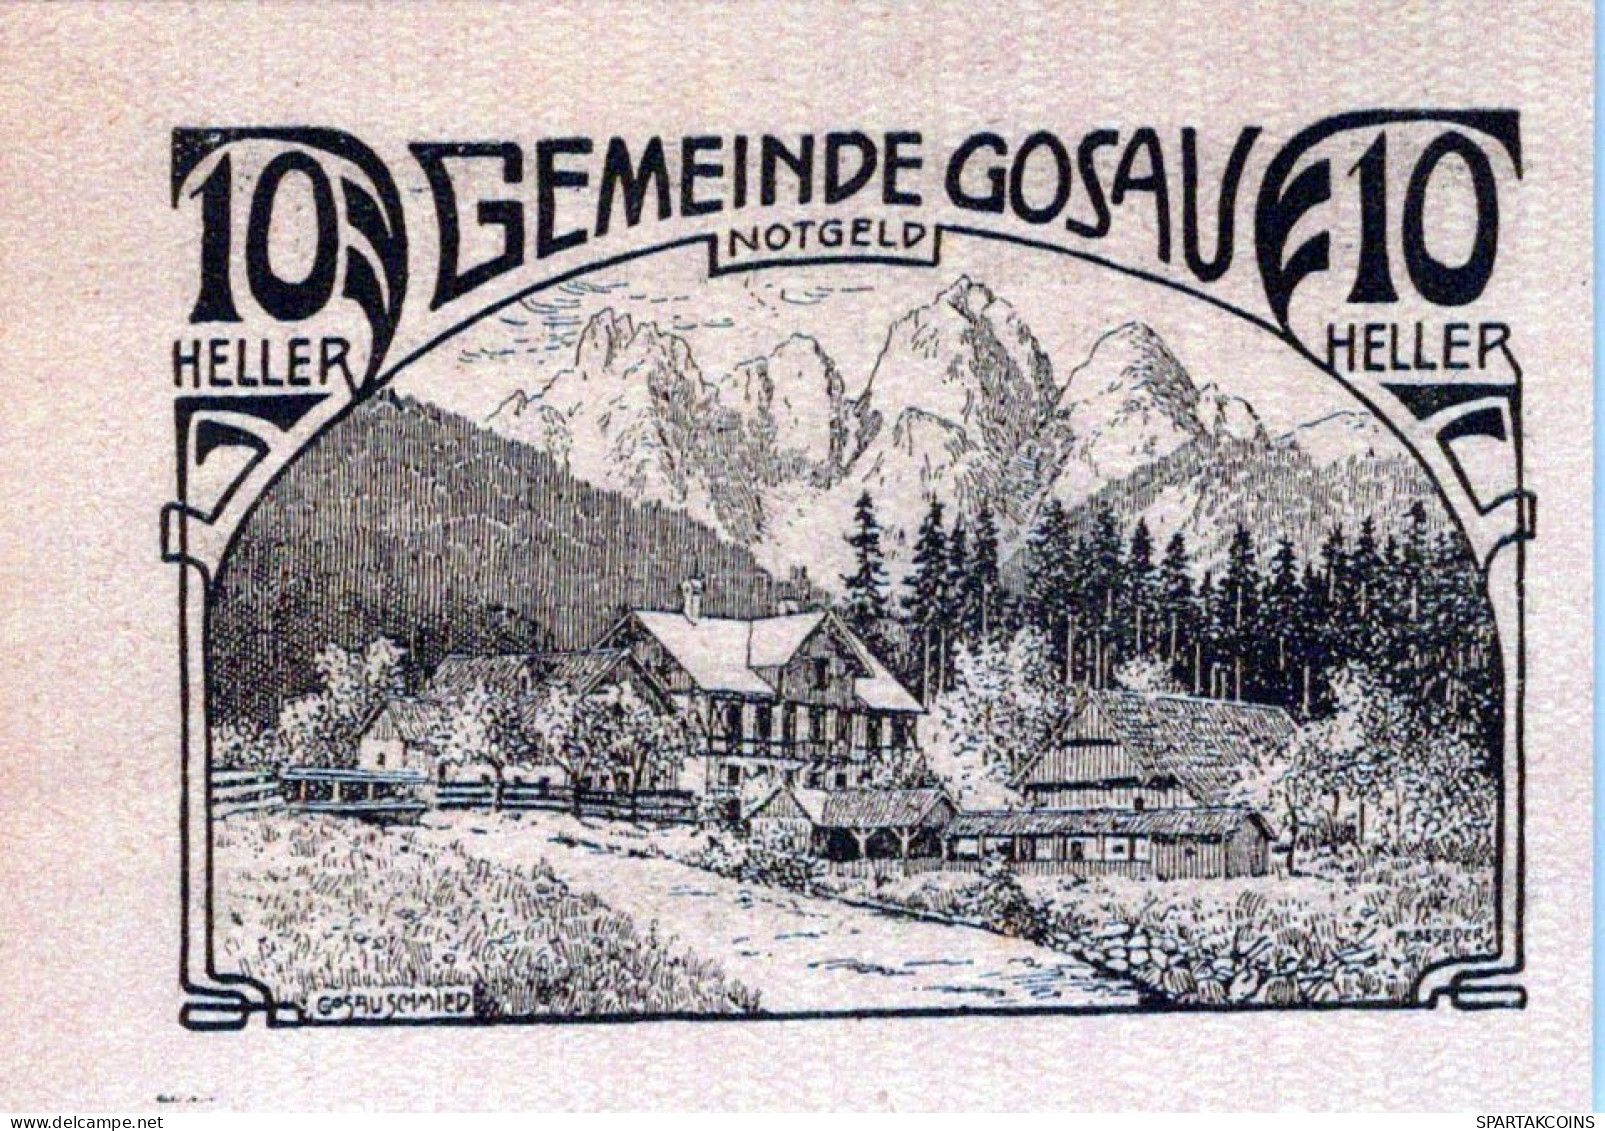 10 HELLER 1920 Stadt GOSAU Oberösterreich Österreich Notgeld Papiergeld Banknote #PG830 - [11] Local Banknote Issues